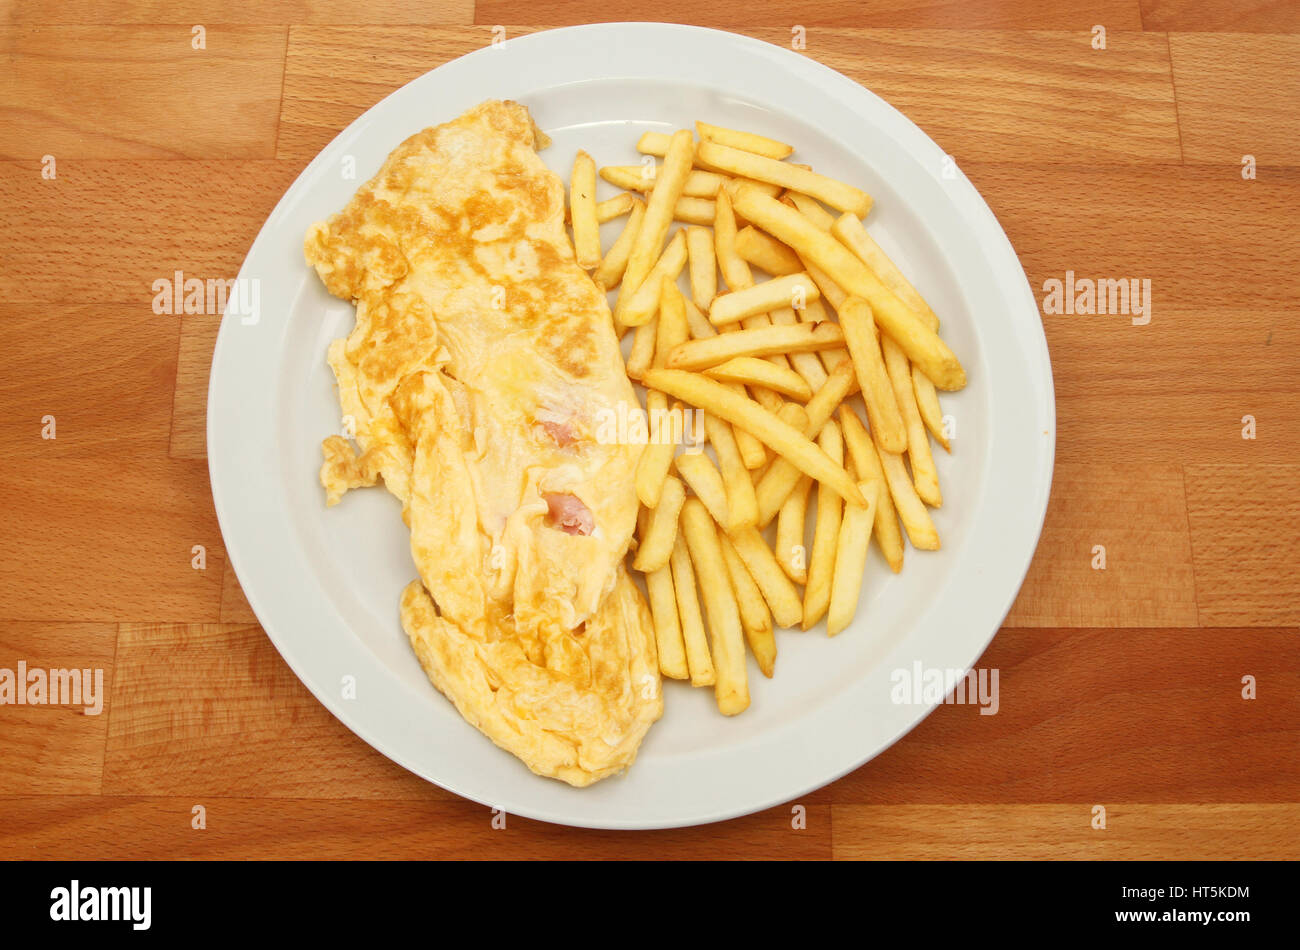 Prosciutto e formaggio frittata con patate fritte su una piastra su un tavolo in legno Foto Stock